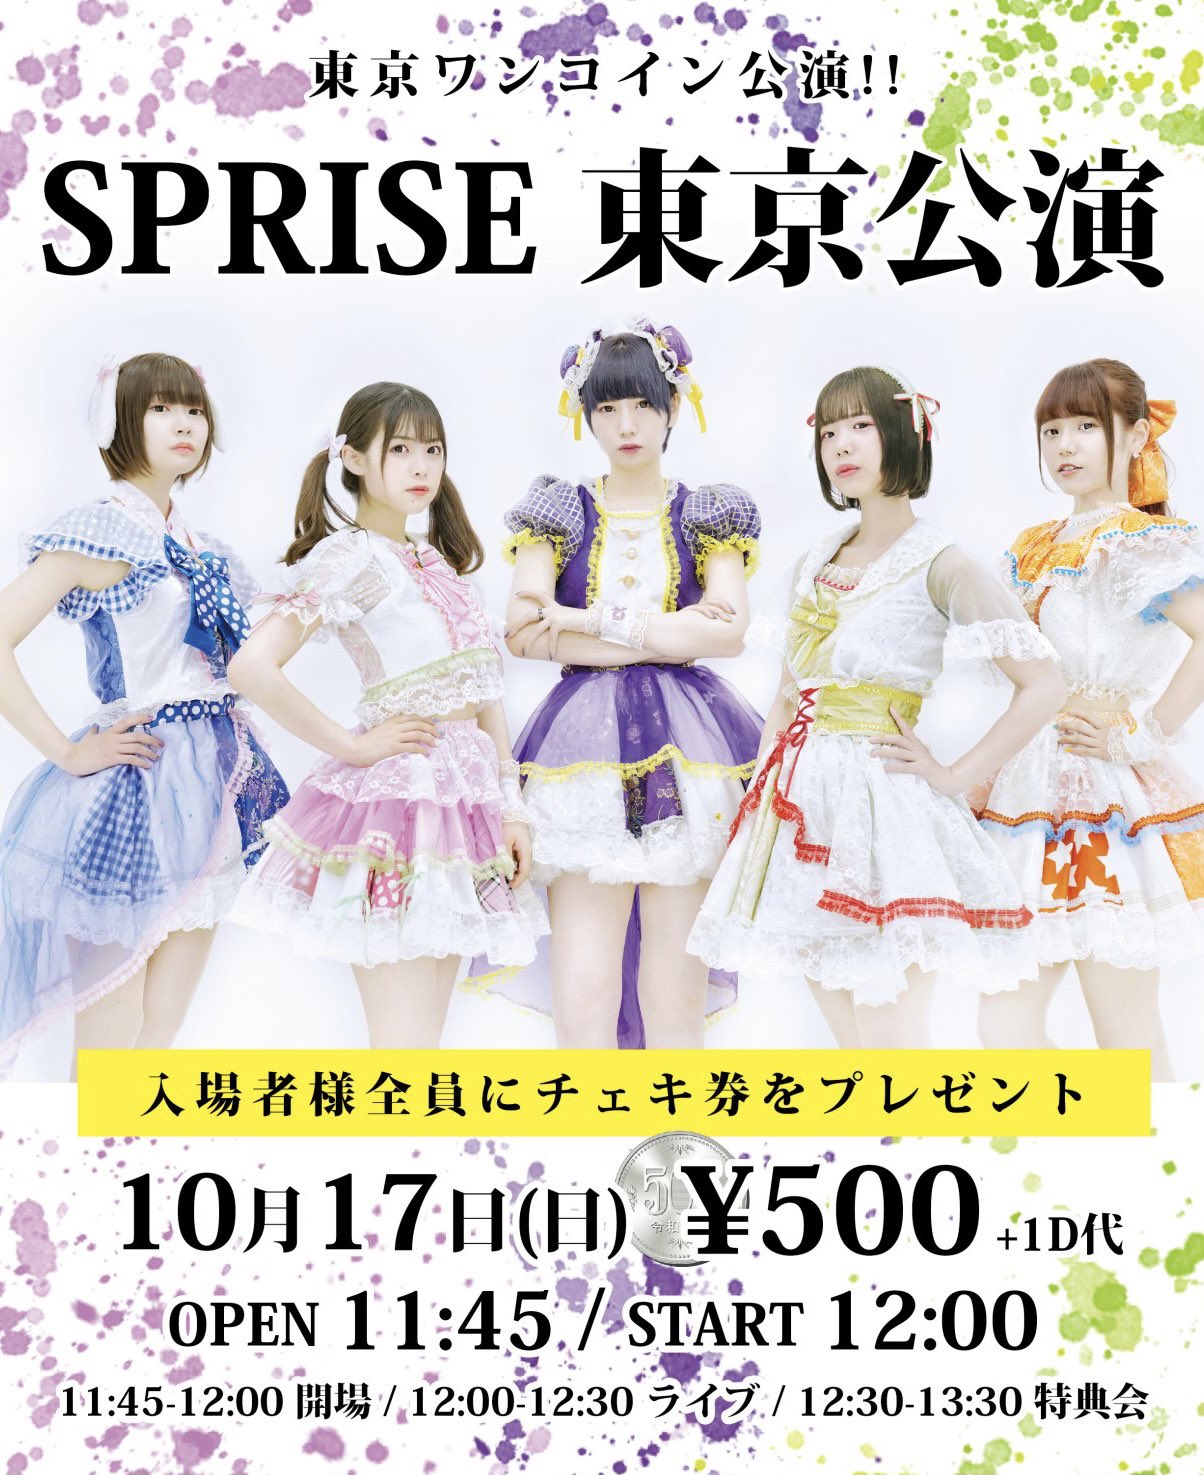 SPRISE 東京公演 -ワンコイン公演‼︎-